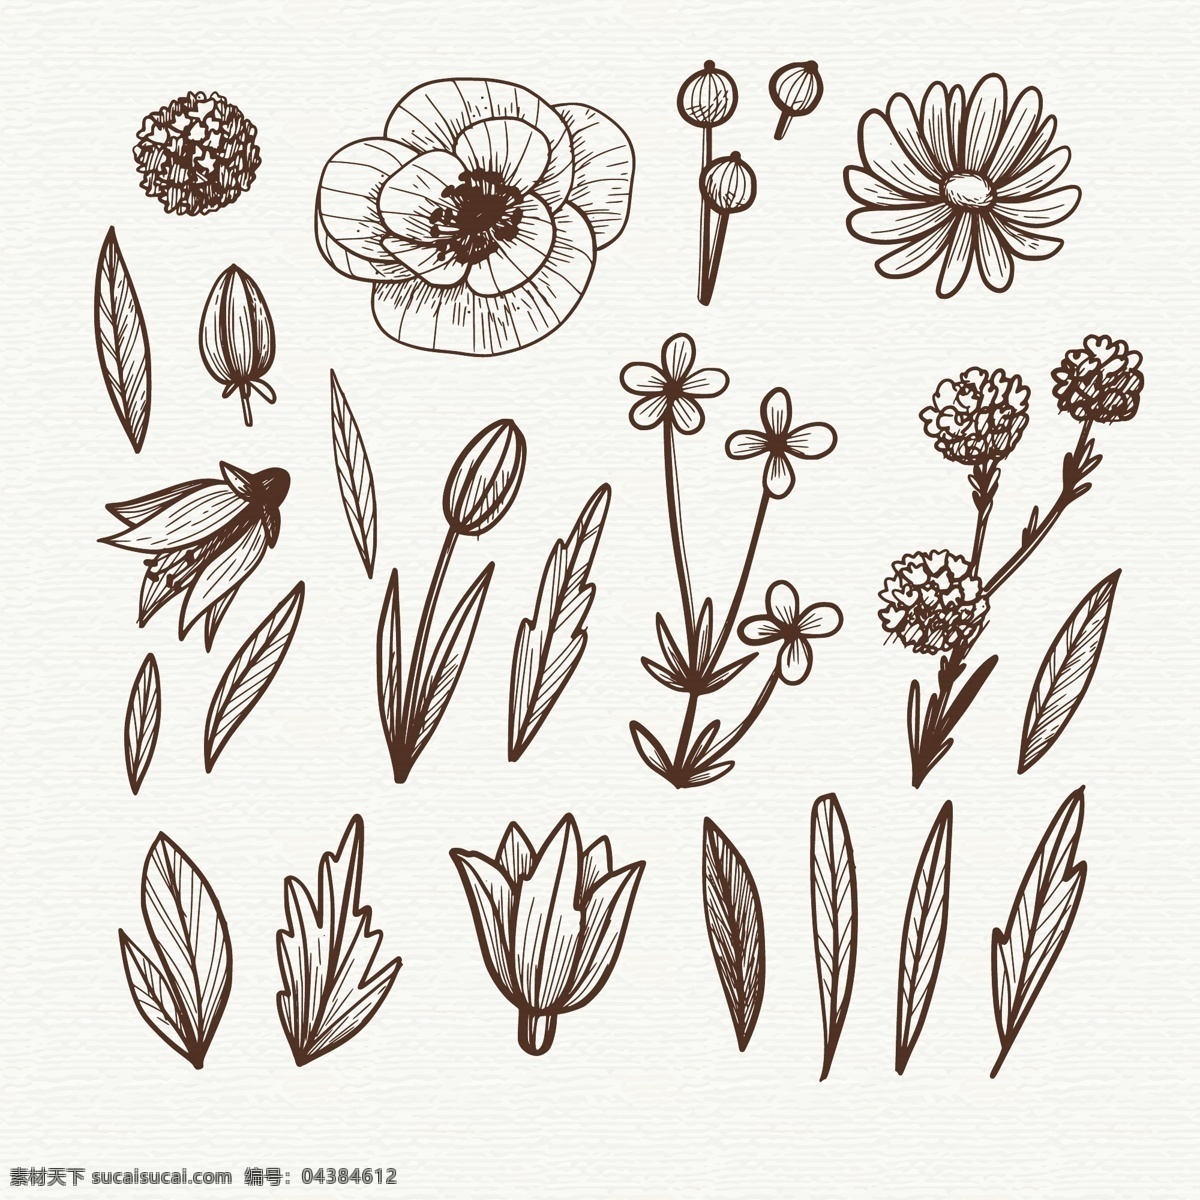 手绘 线描 花卉 植物 插图 线条 花朵 自然 叶